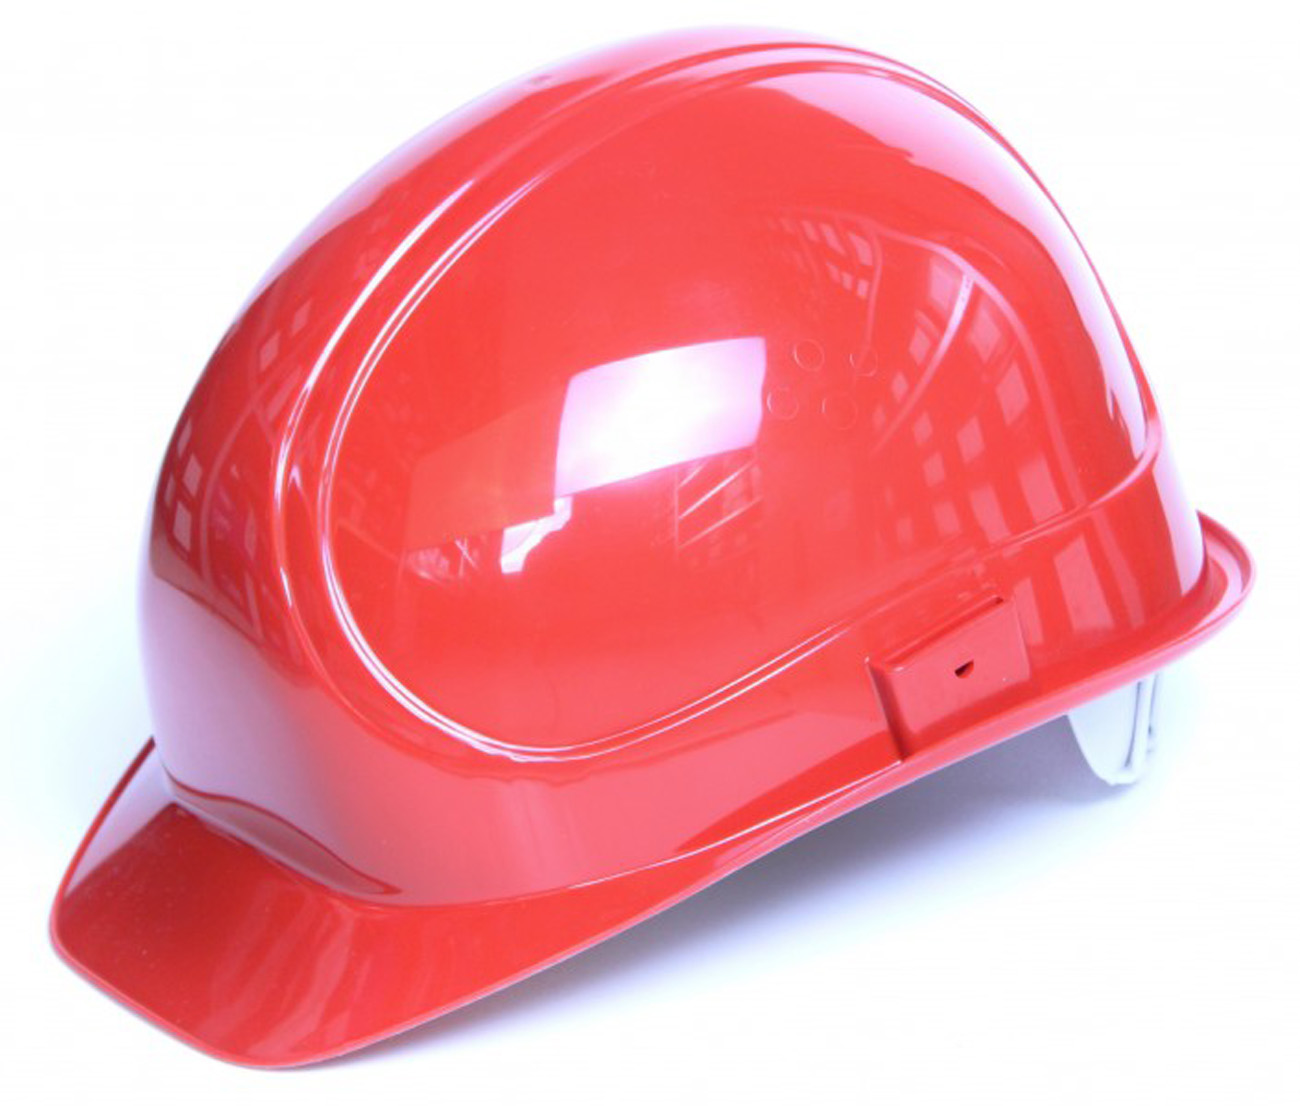 AUS Elektriker Schutzhelm in rot 1000 Volt Helm Helme Bauhelm für Kopfschutz